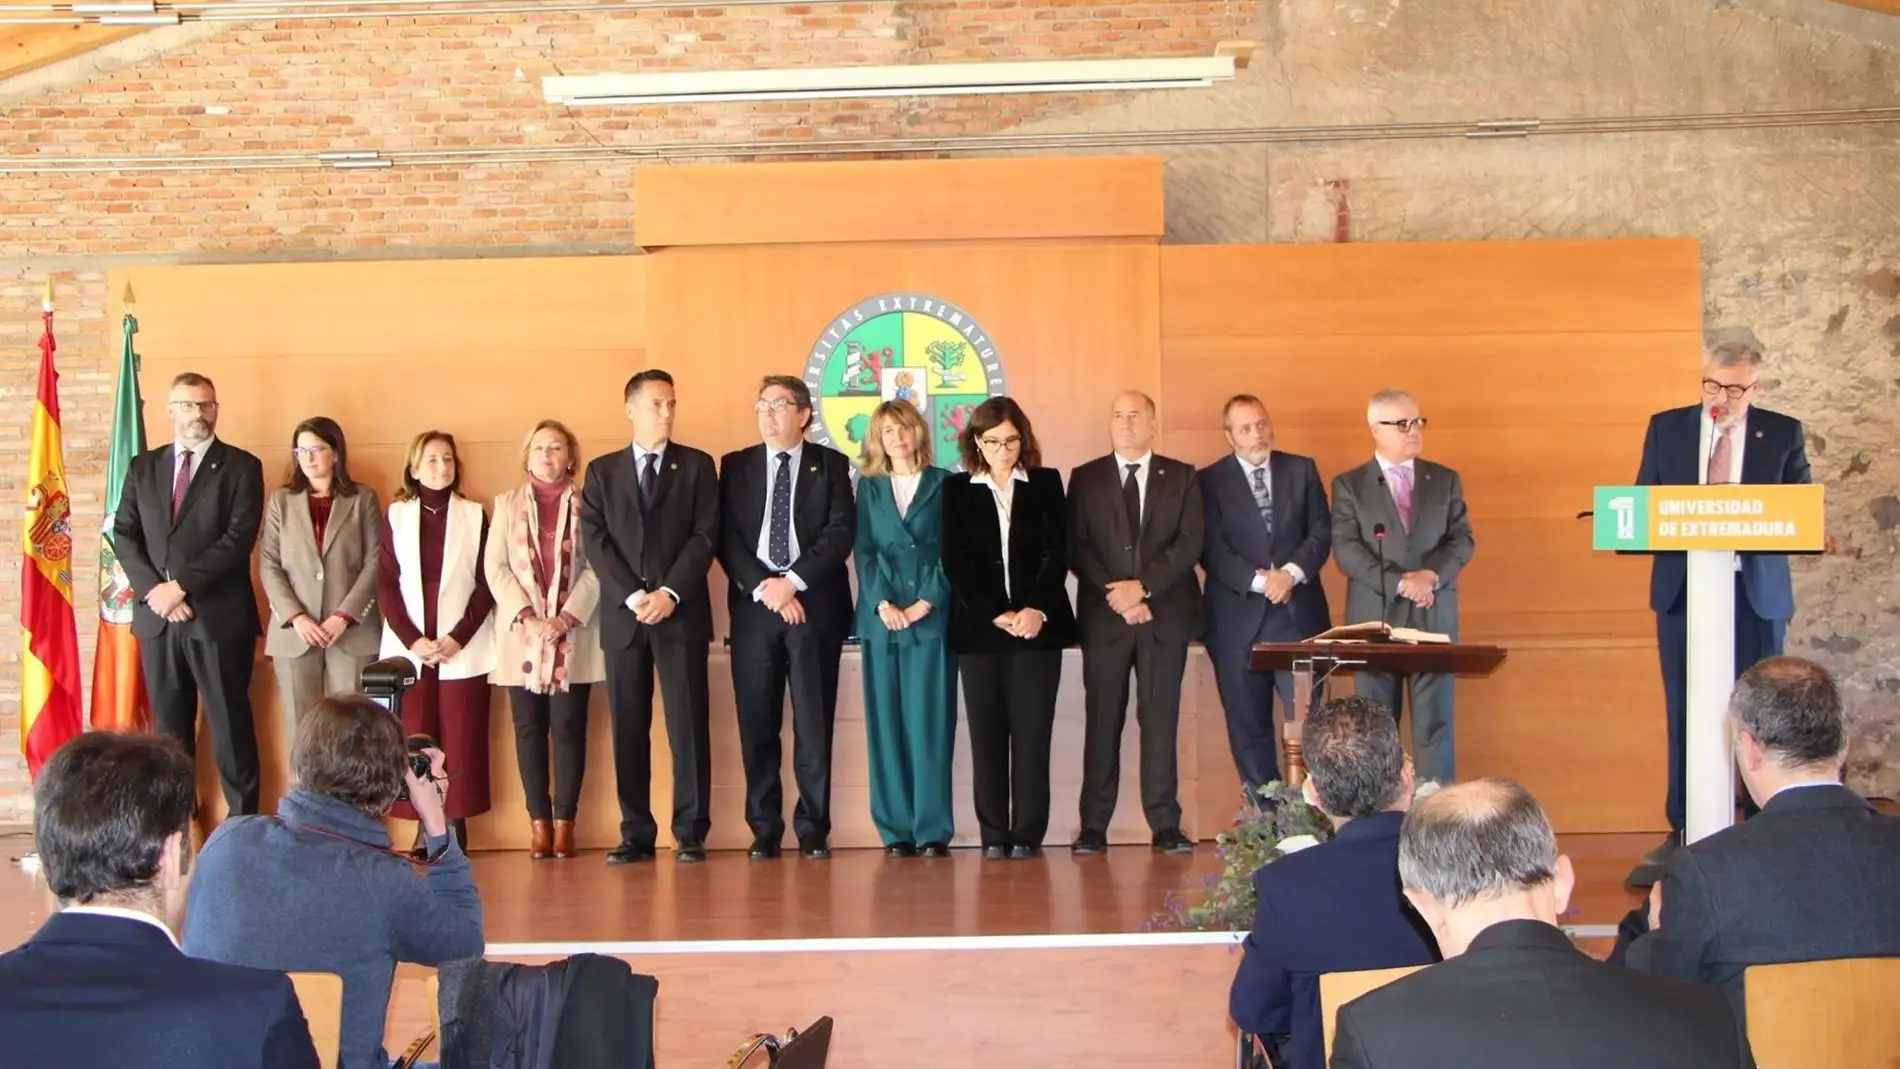 La Universidad de Extremadura ya cuenta con un nuevo equipo de Gobierno